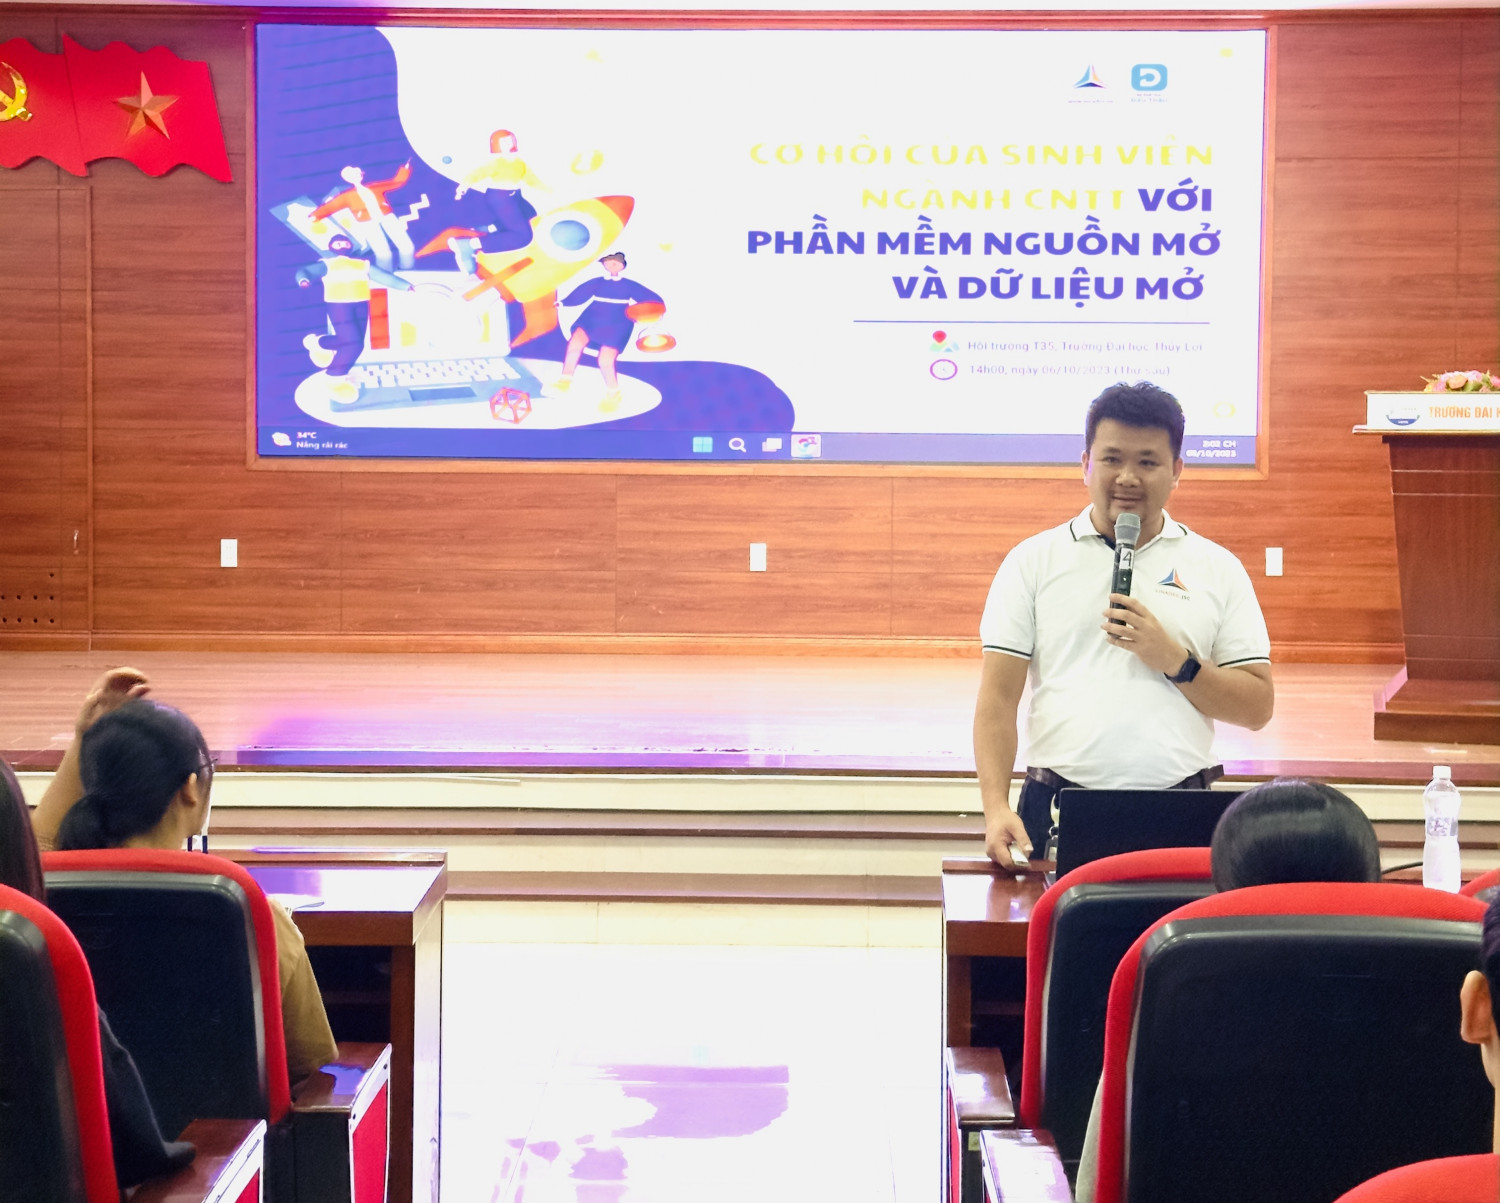 Anh Nguyễn Thế Hùng tham gia buổi talkshow với chủ đề “Cơ hội của sinh viên ngành CNTT với Phần mềm nguồn mở và Dữ liệu mở”